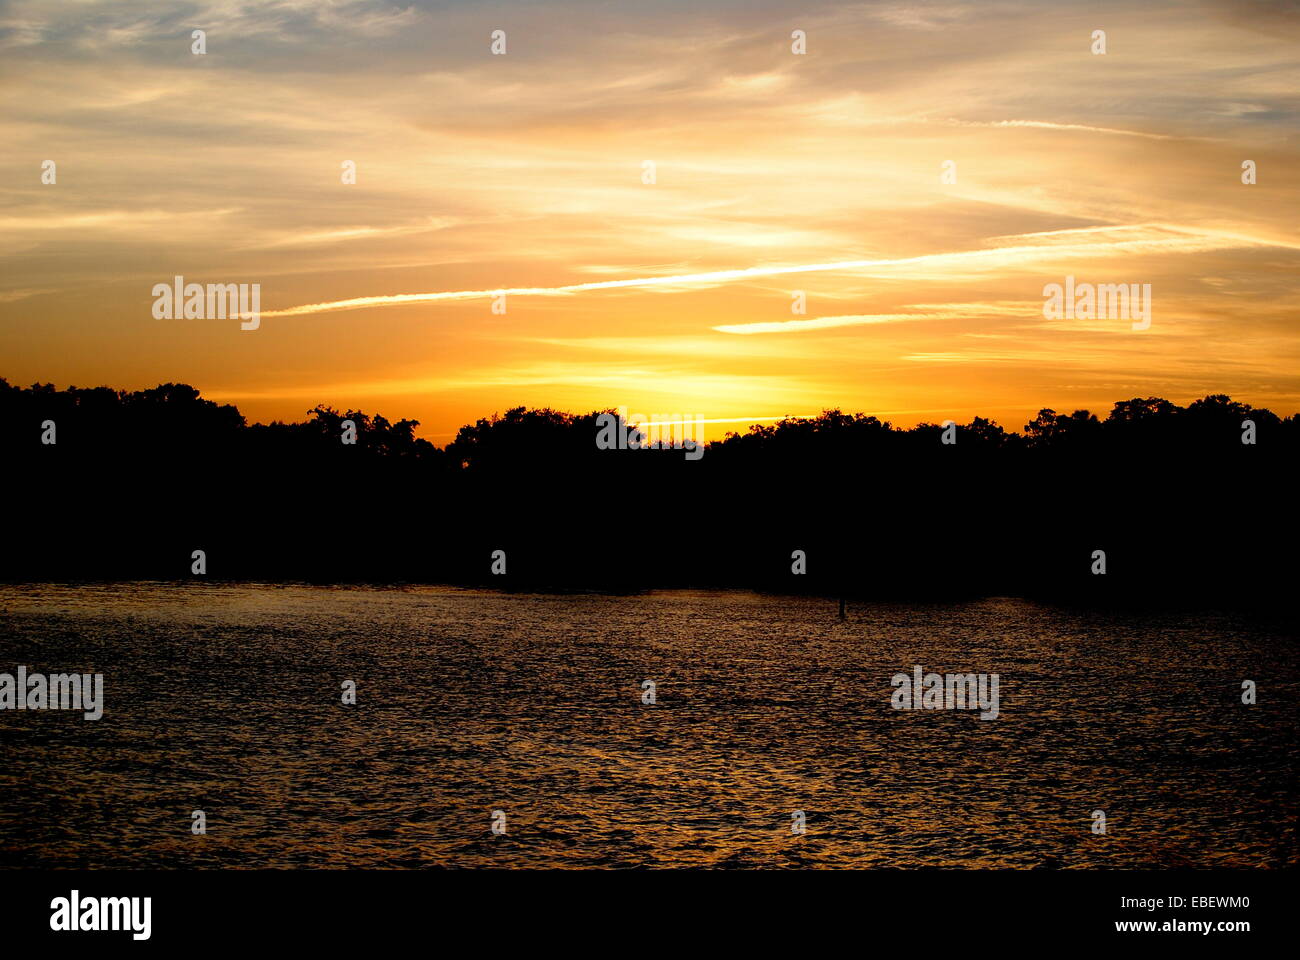 Sonnenuntergang über der Bucht Ballast Point Park, Tampa Florida Vereinigte Staaten von Amerika aus betrachtet. Stockfoto